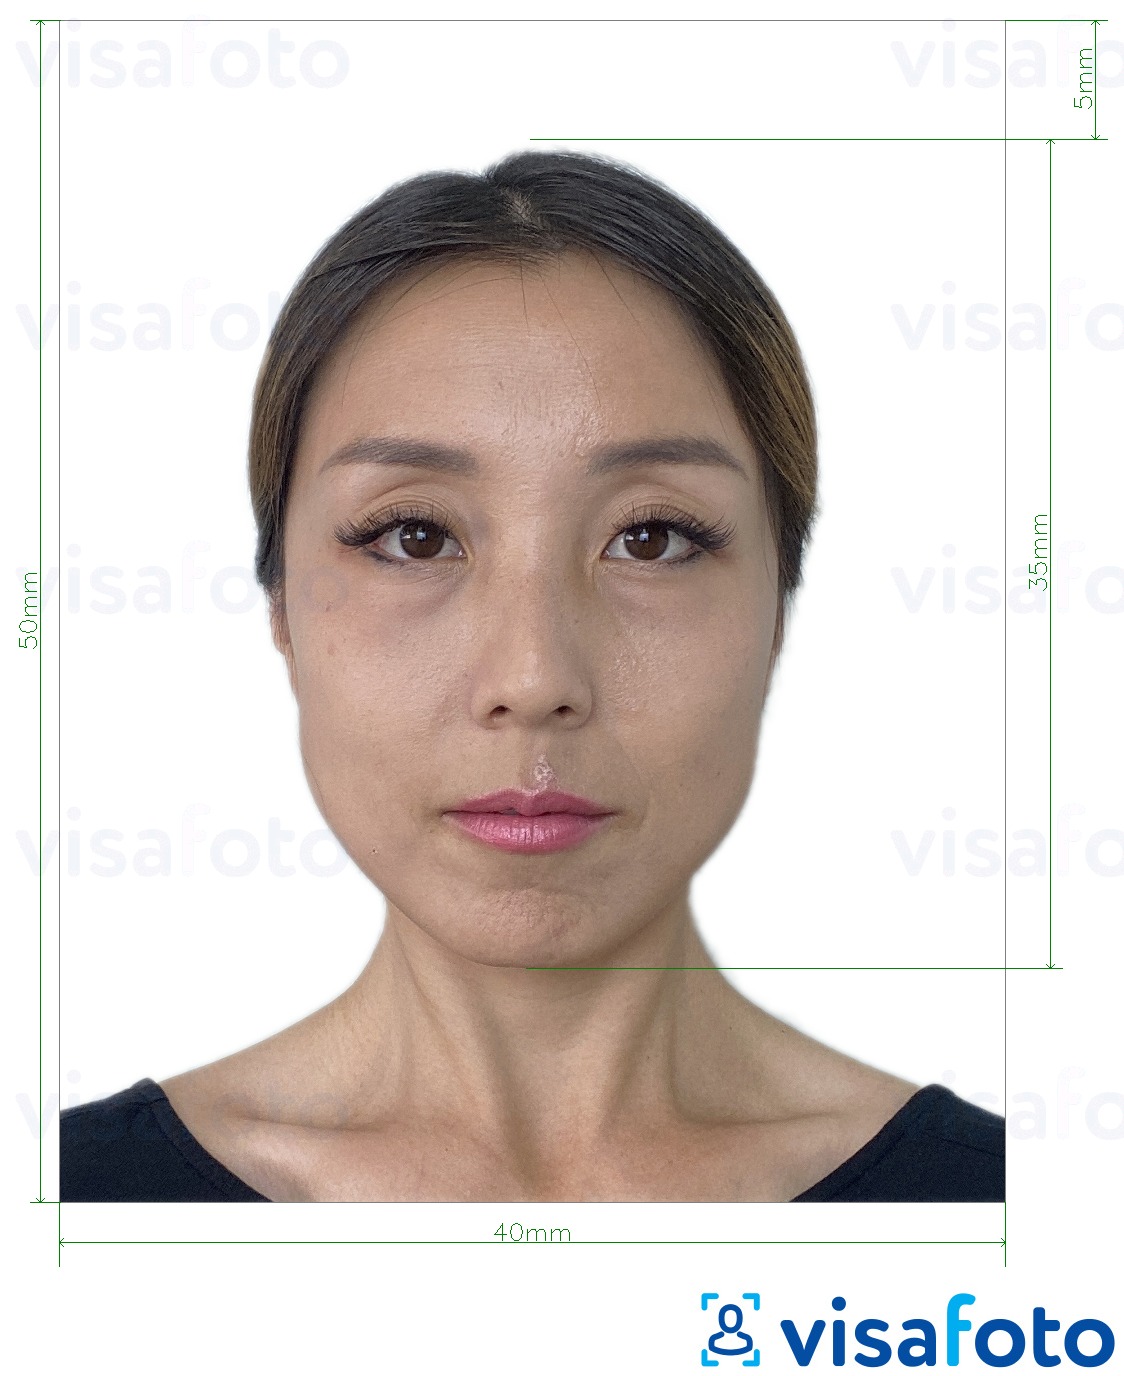 Przykład zdjęcia dla Hongkong wiza 40x50 mm (4x5 cm) z podaniem dokładnego rozmiaru.